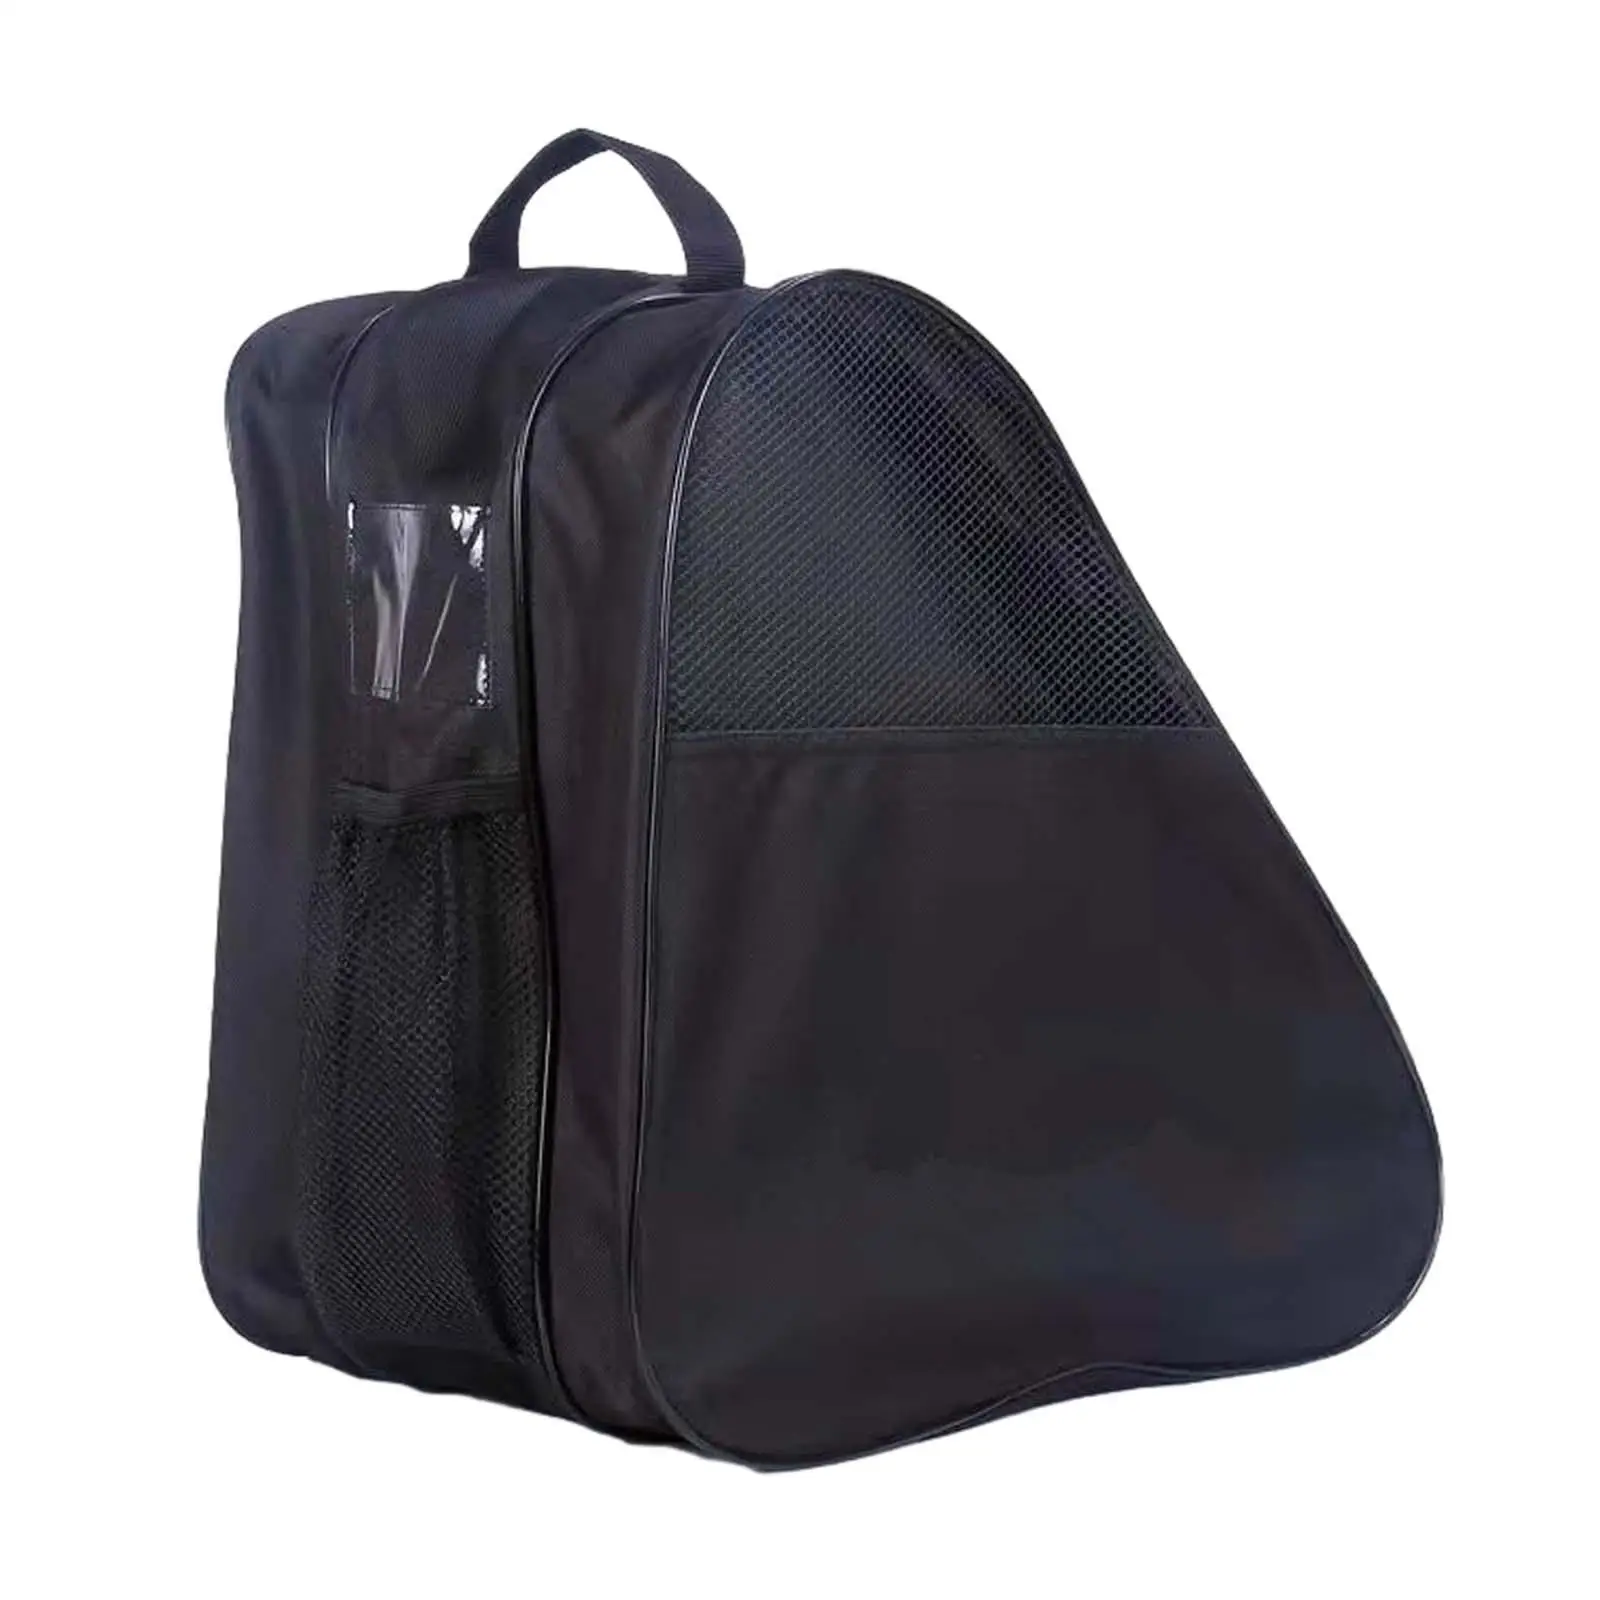 Roller Skate Bag Inline Skates Portable Oxford Cloth Skating Accessories with Adjustable Shoulder Strap Handle Skate Carry Bag